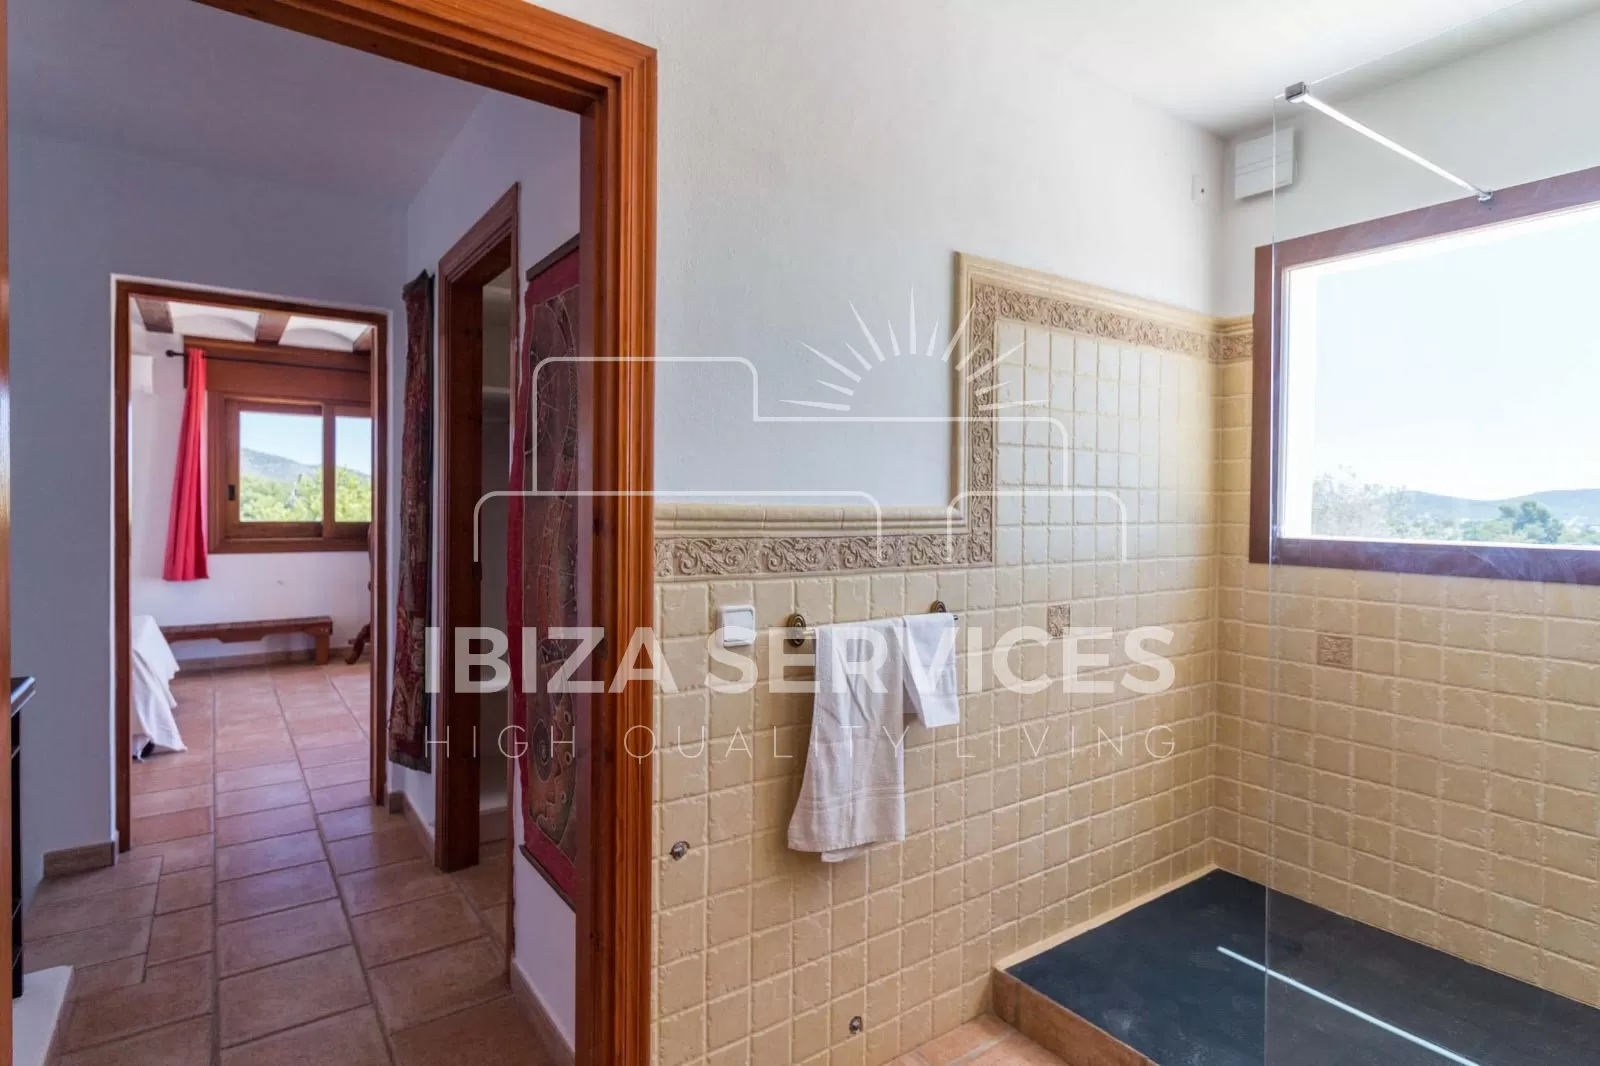 Long term rental villa in Sa Caleta